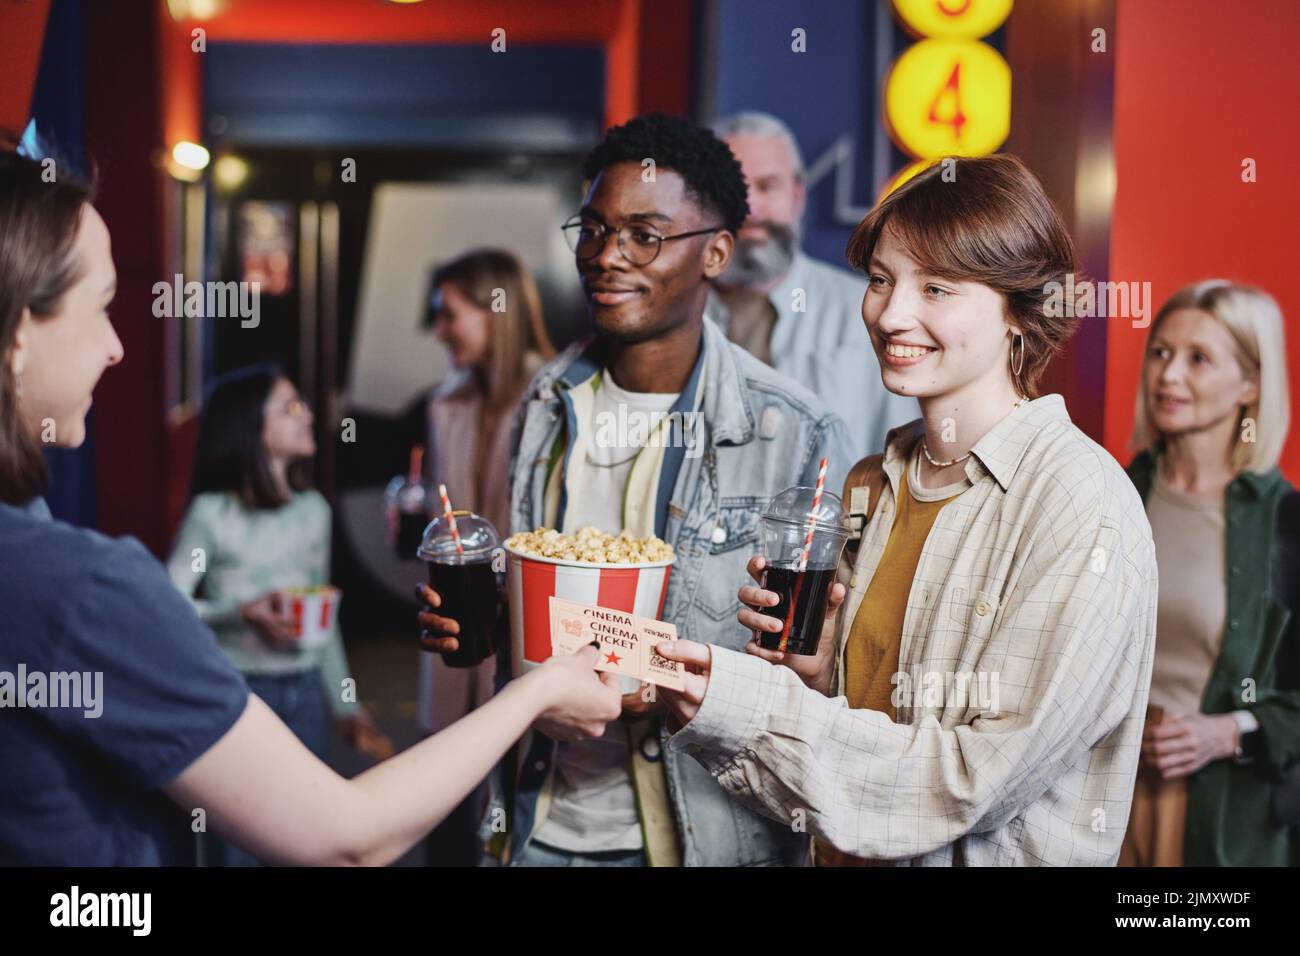 Alegre joven negro y mujer caucásica pasando sus entradas para la película a un trabajador de sala de cine Foto de stock